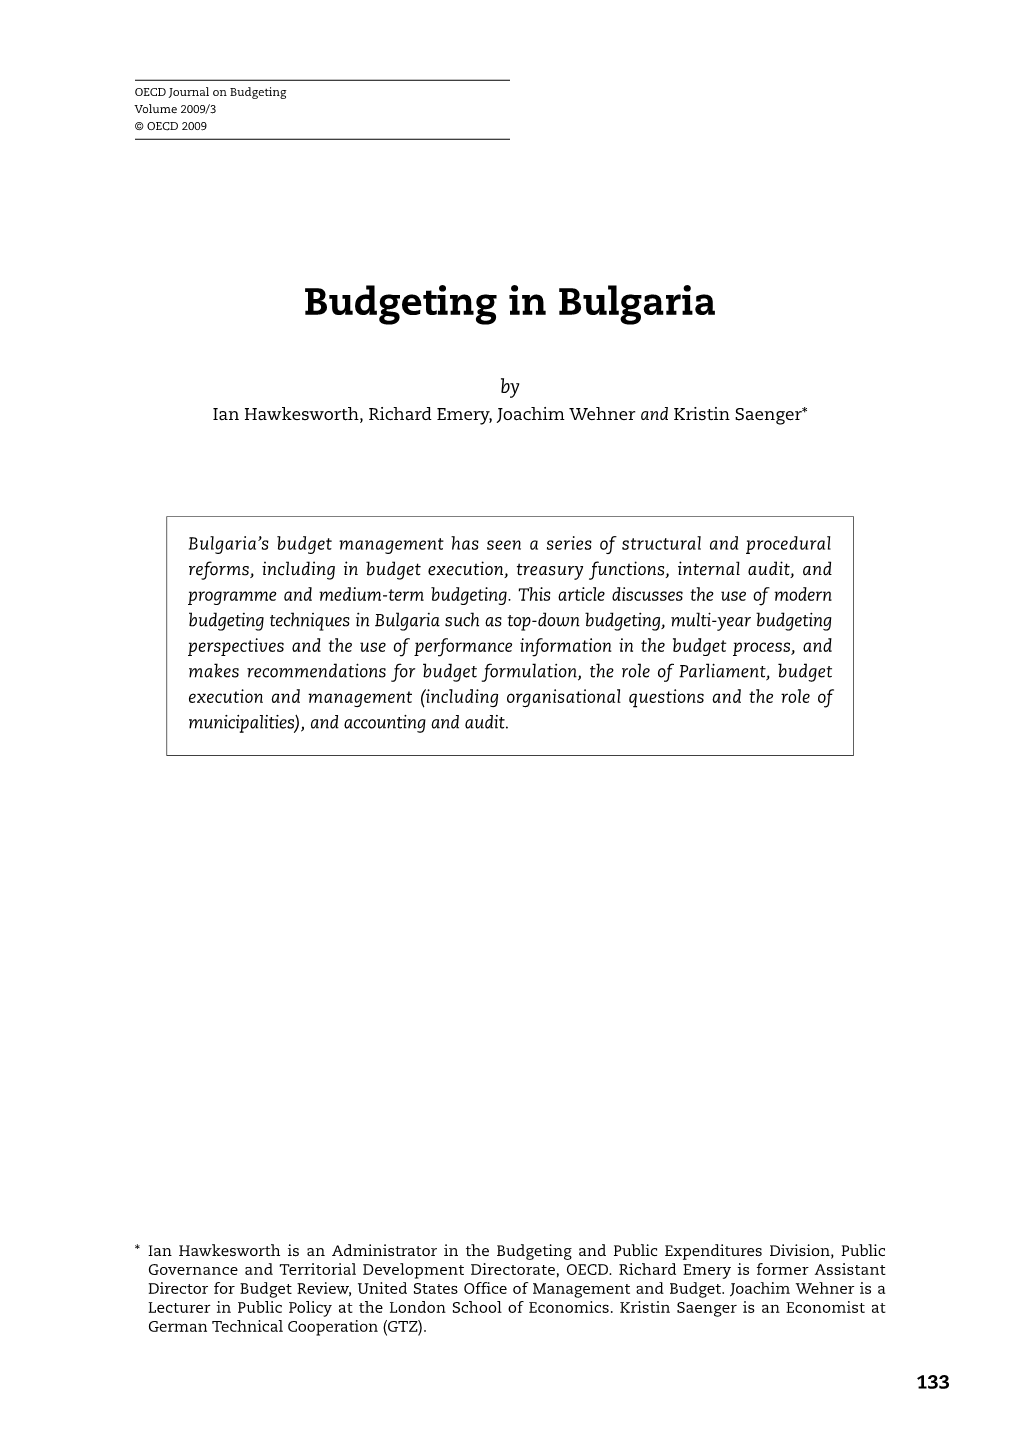 Budgeting in Bulgaria